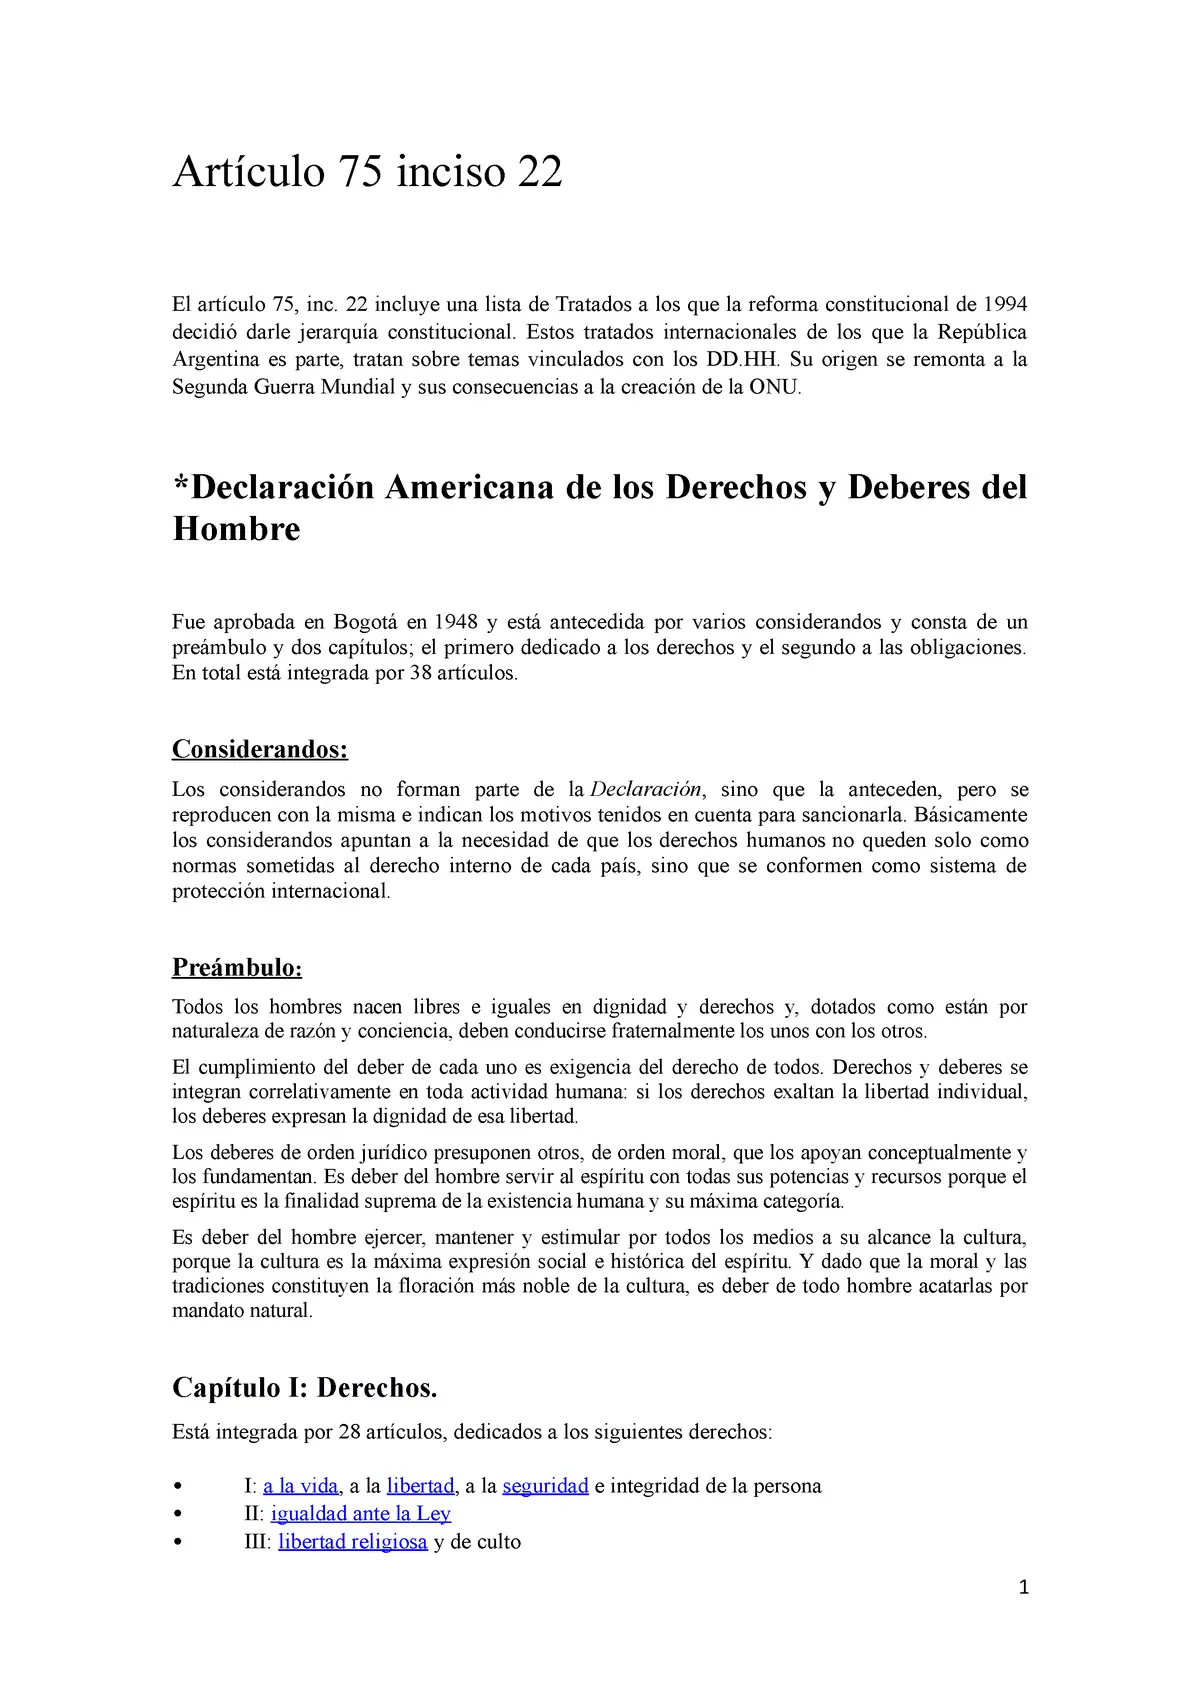 articulo 75 constitucion nacional argentina resumen - Qué tratados se incorporaron con jerarquía constitucional art 75 inc 22 CN